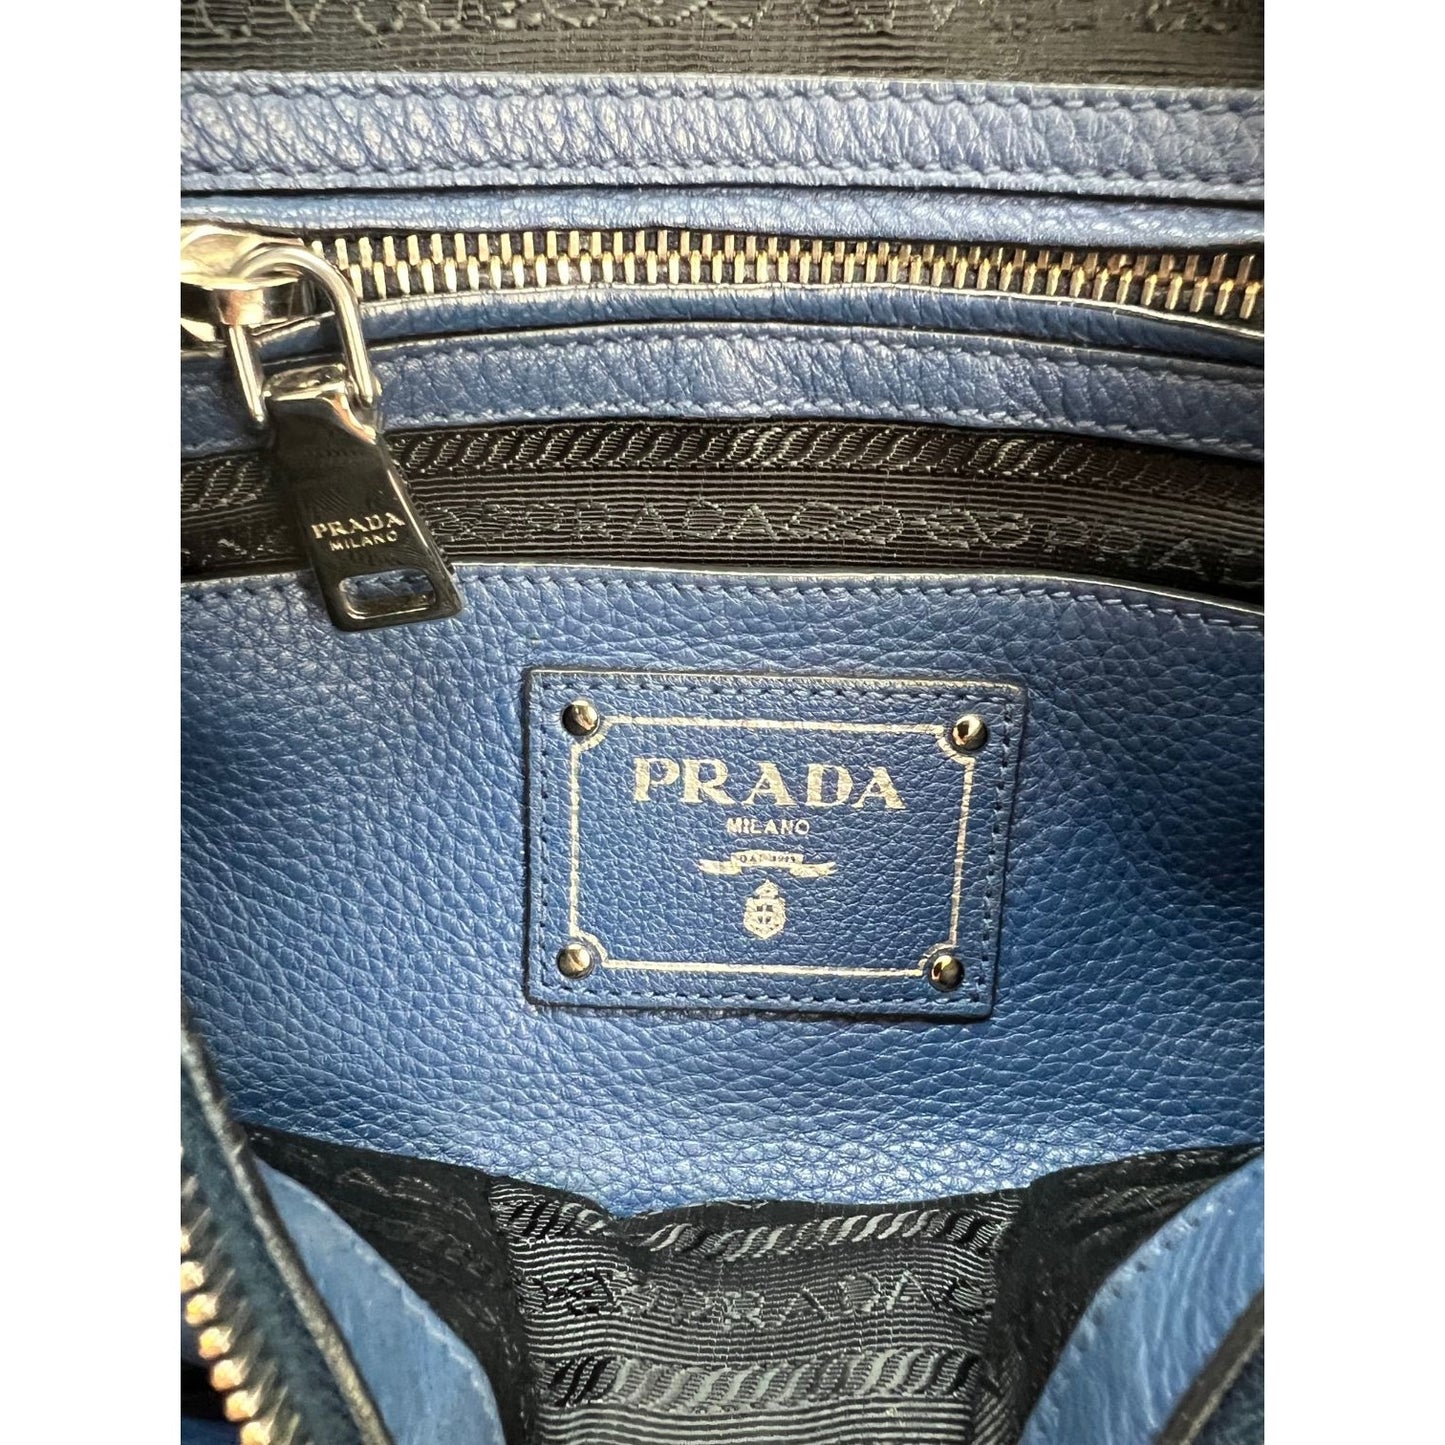 Prada Vitello Phenix Logo Leather Tote on SALE